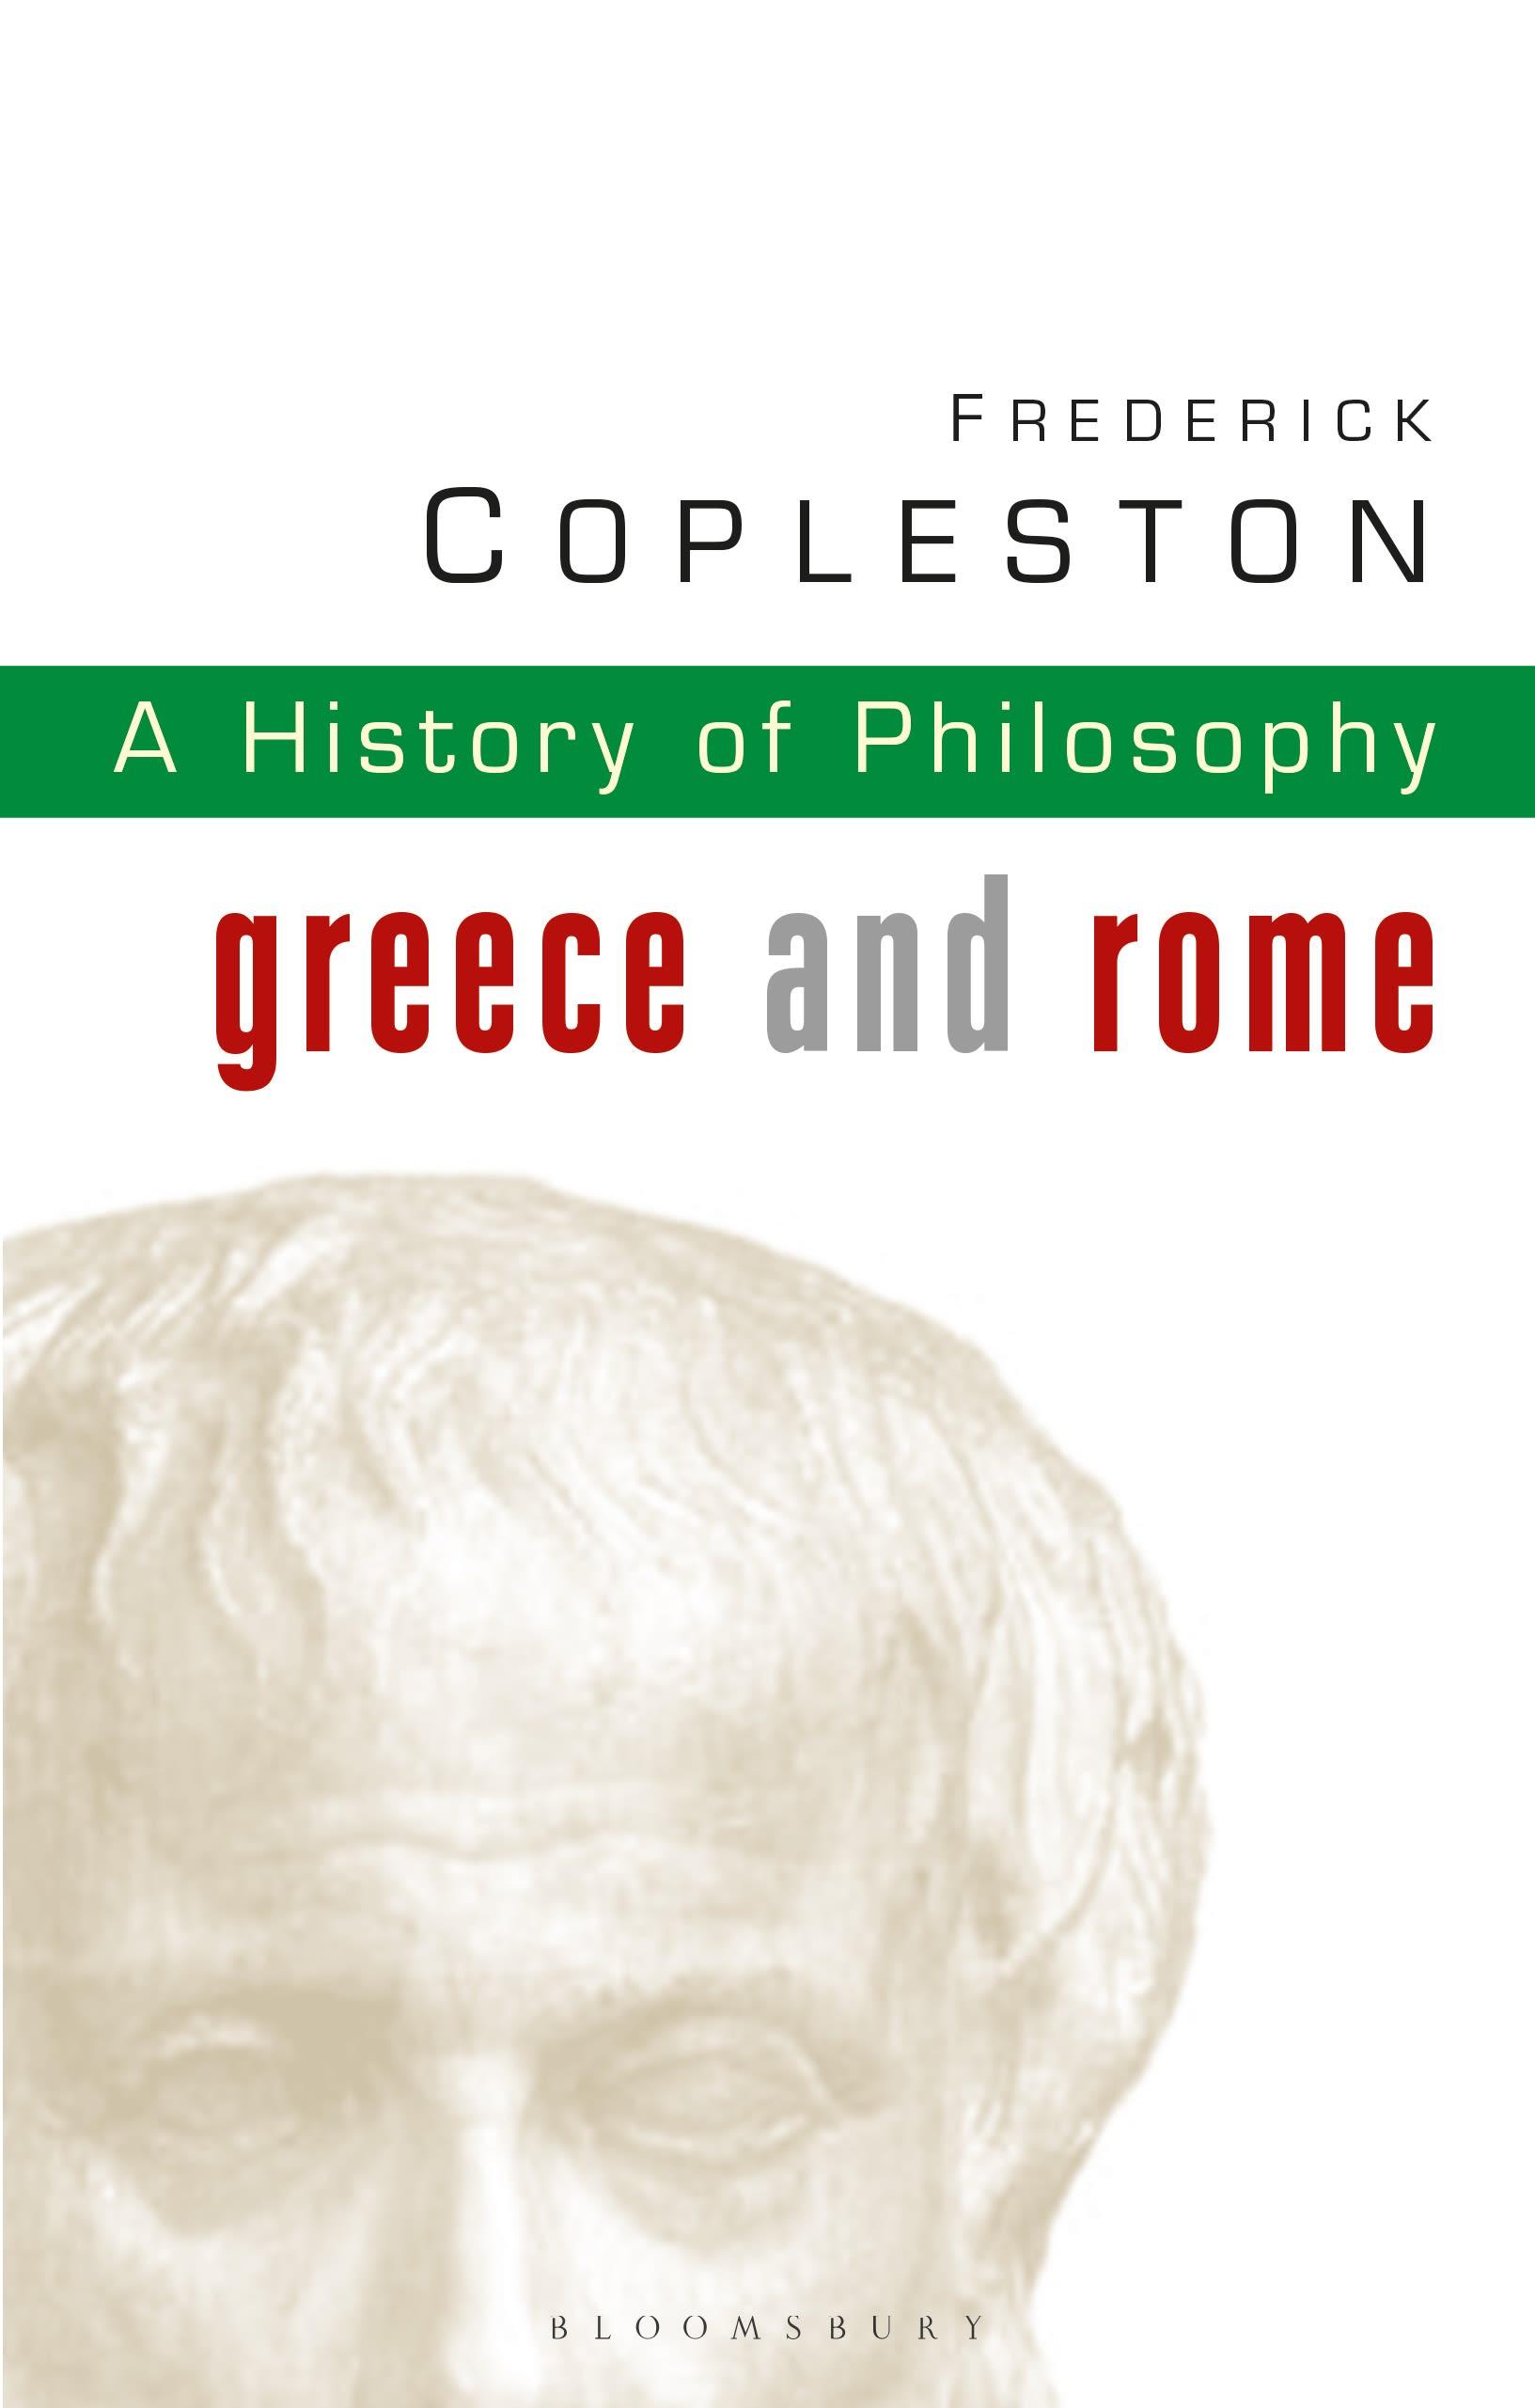 History of Philosophy Volume 1 / Greece and Rome / Frederick Copleston / Taschenbuch / Kartoniert / Broschiert / Englisch / 2003 / Bloomsbury Publishing PLC / EAN 9780826468956 - Copleston, Frederick